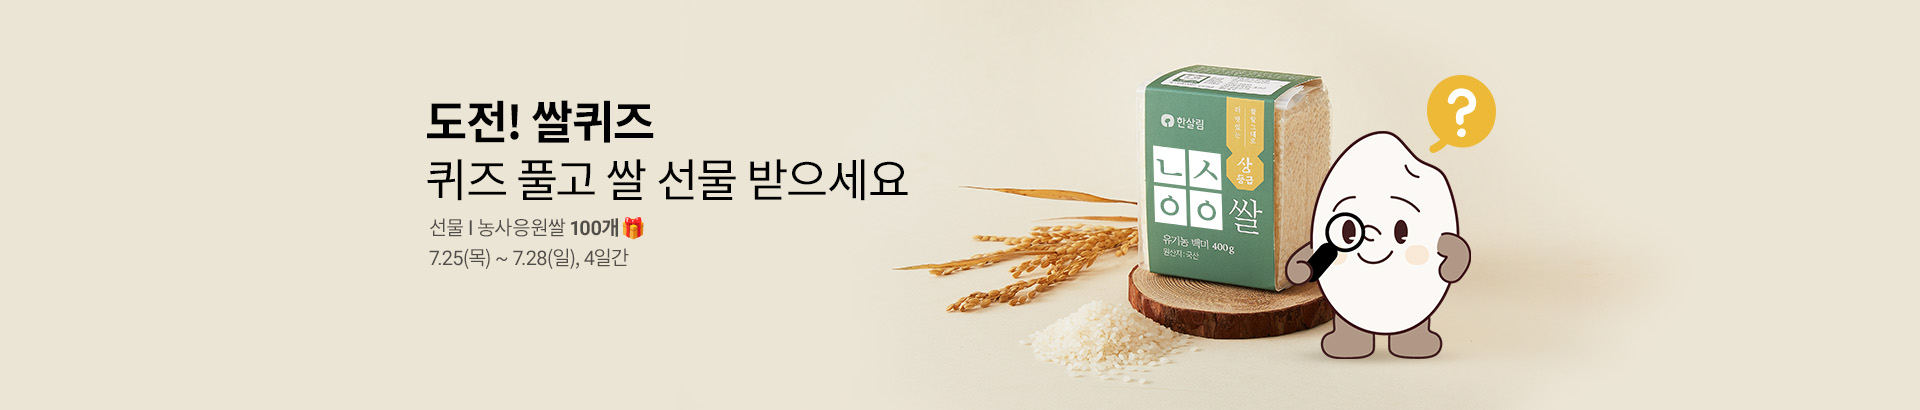 농사응원쌀 퀴즈 이벤트